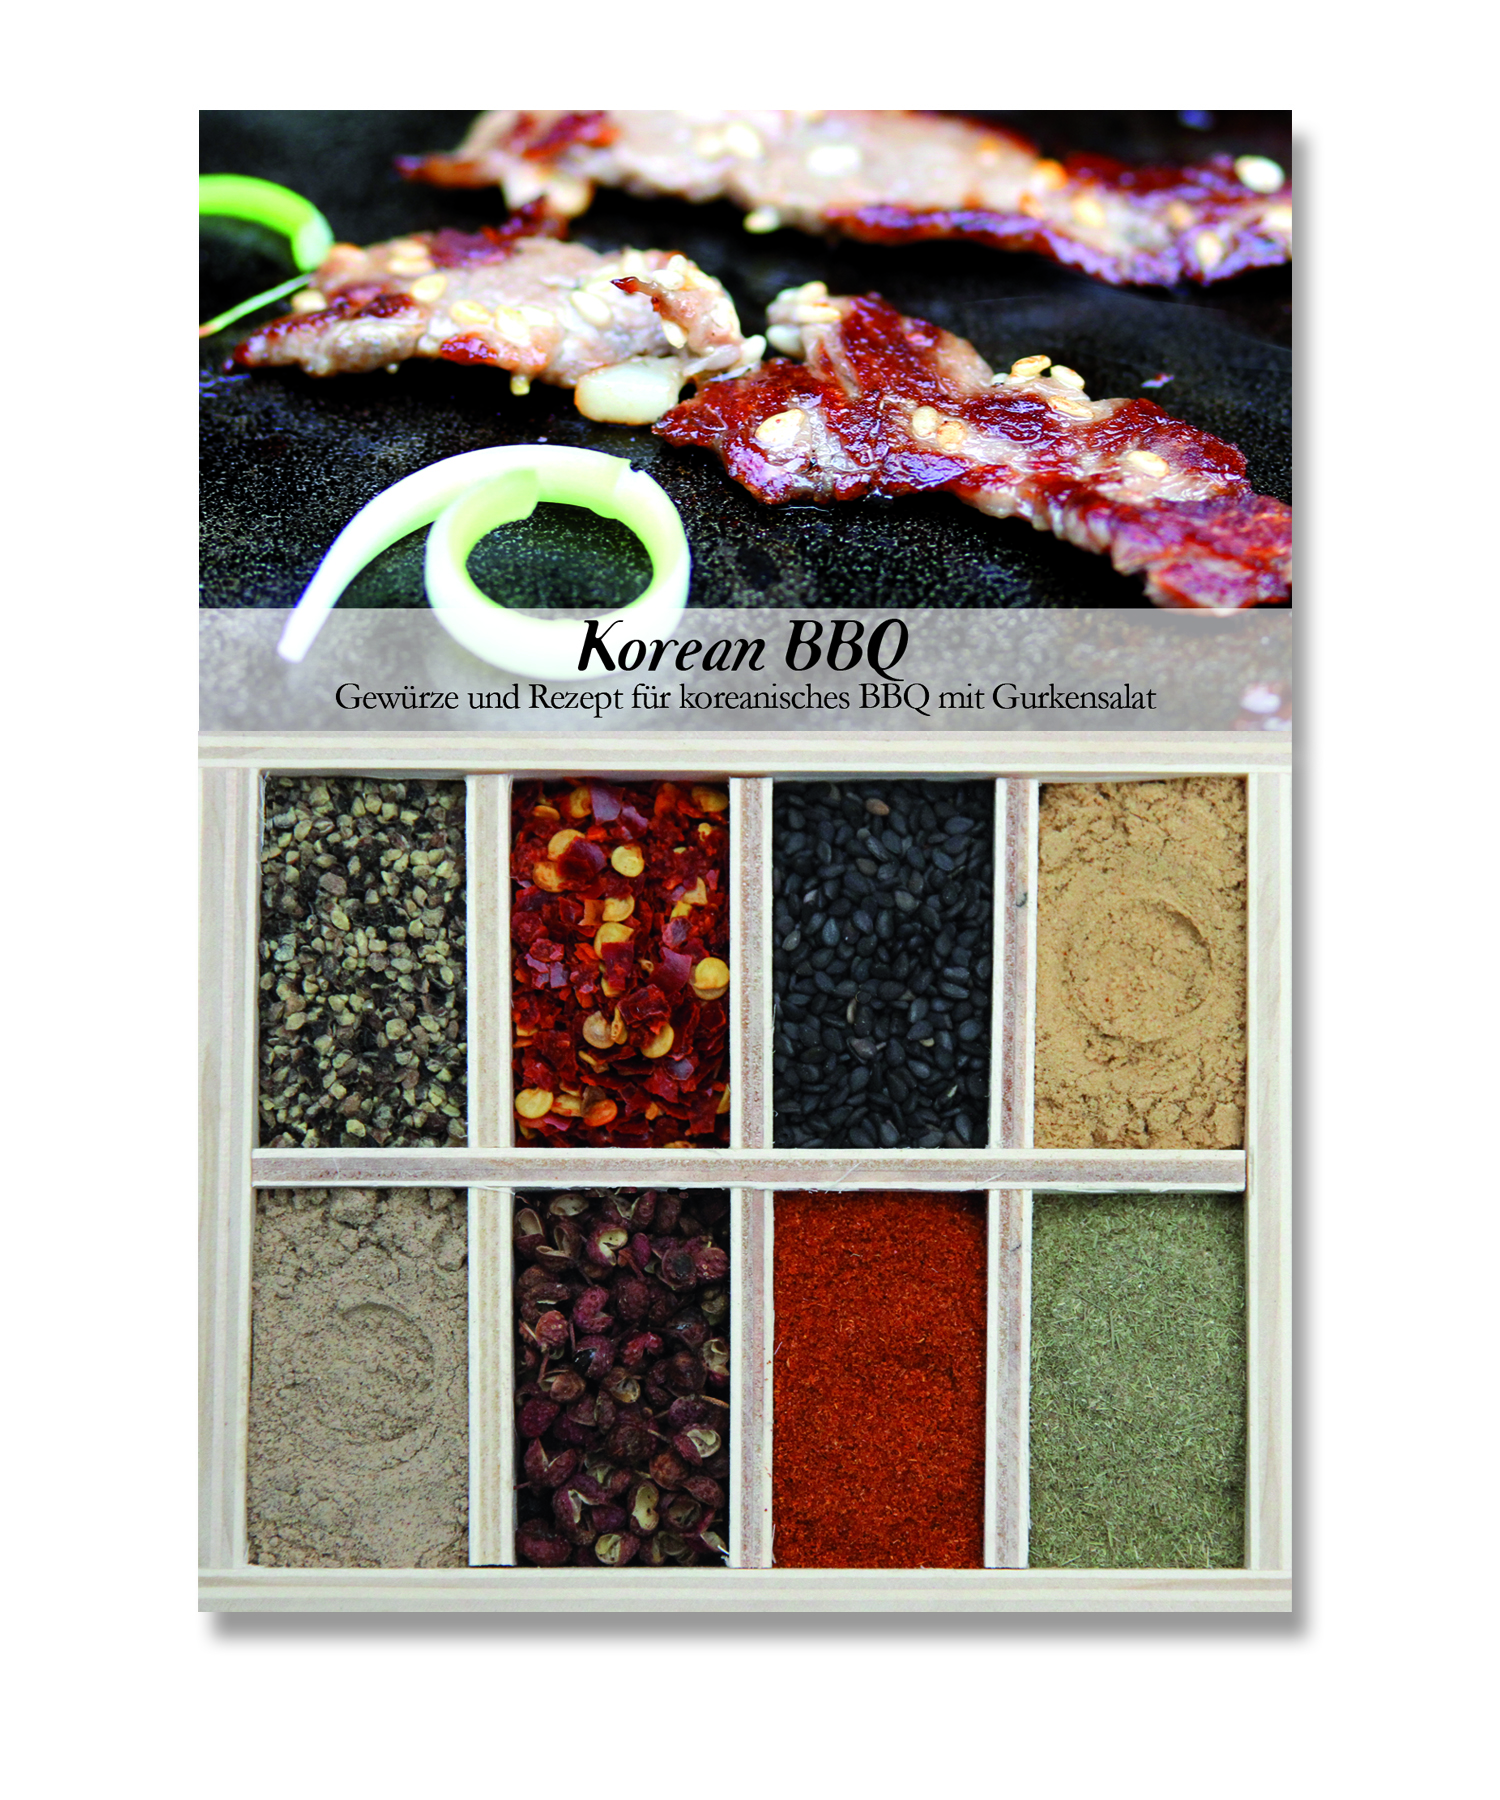 Korean BBQ-Gewürzkasten